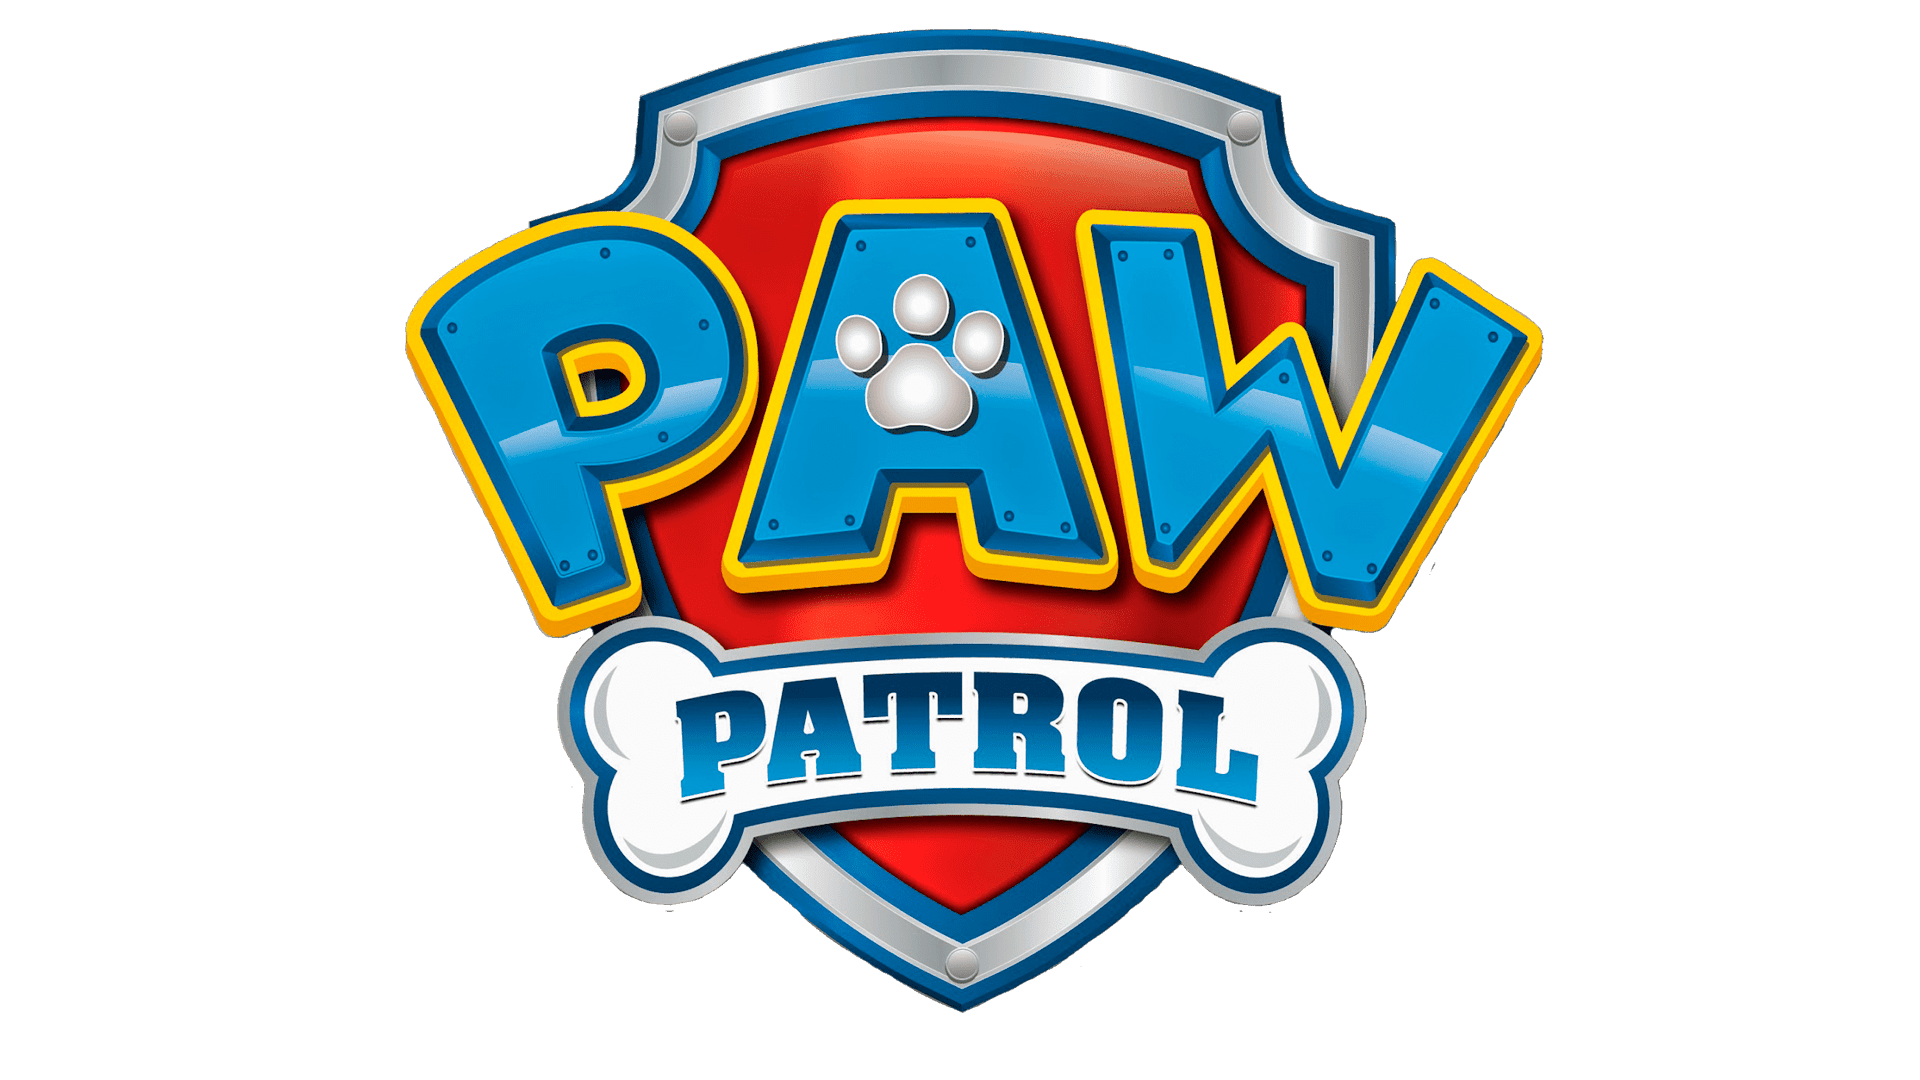 El top 99 imagen el logo de paw patrol